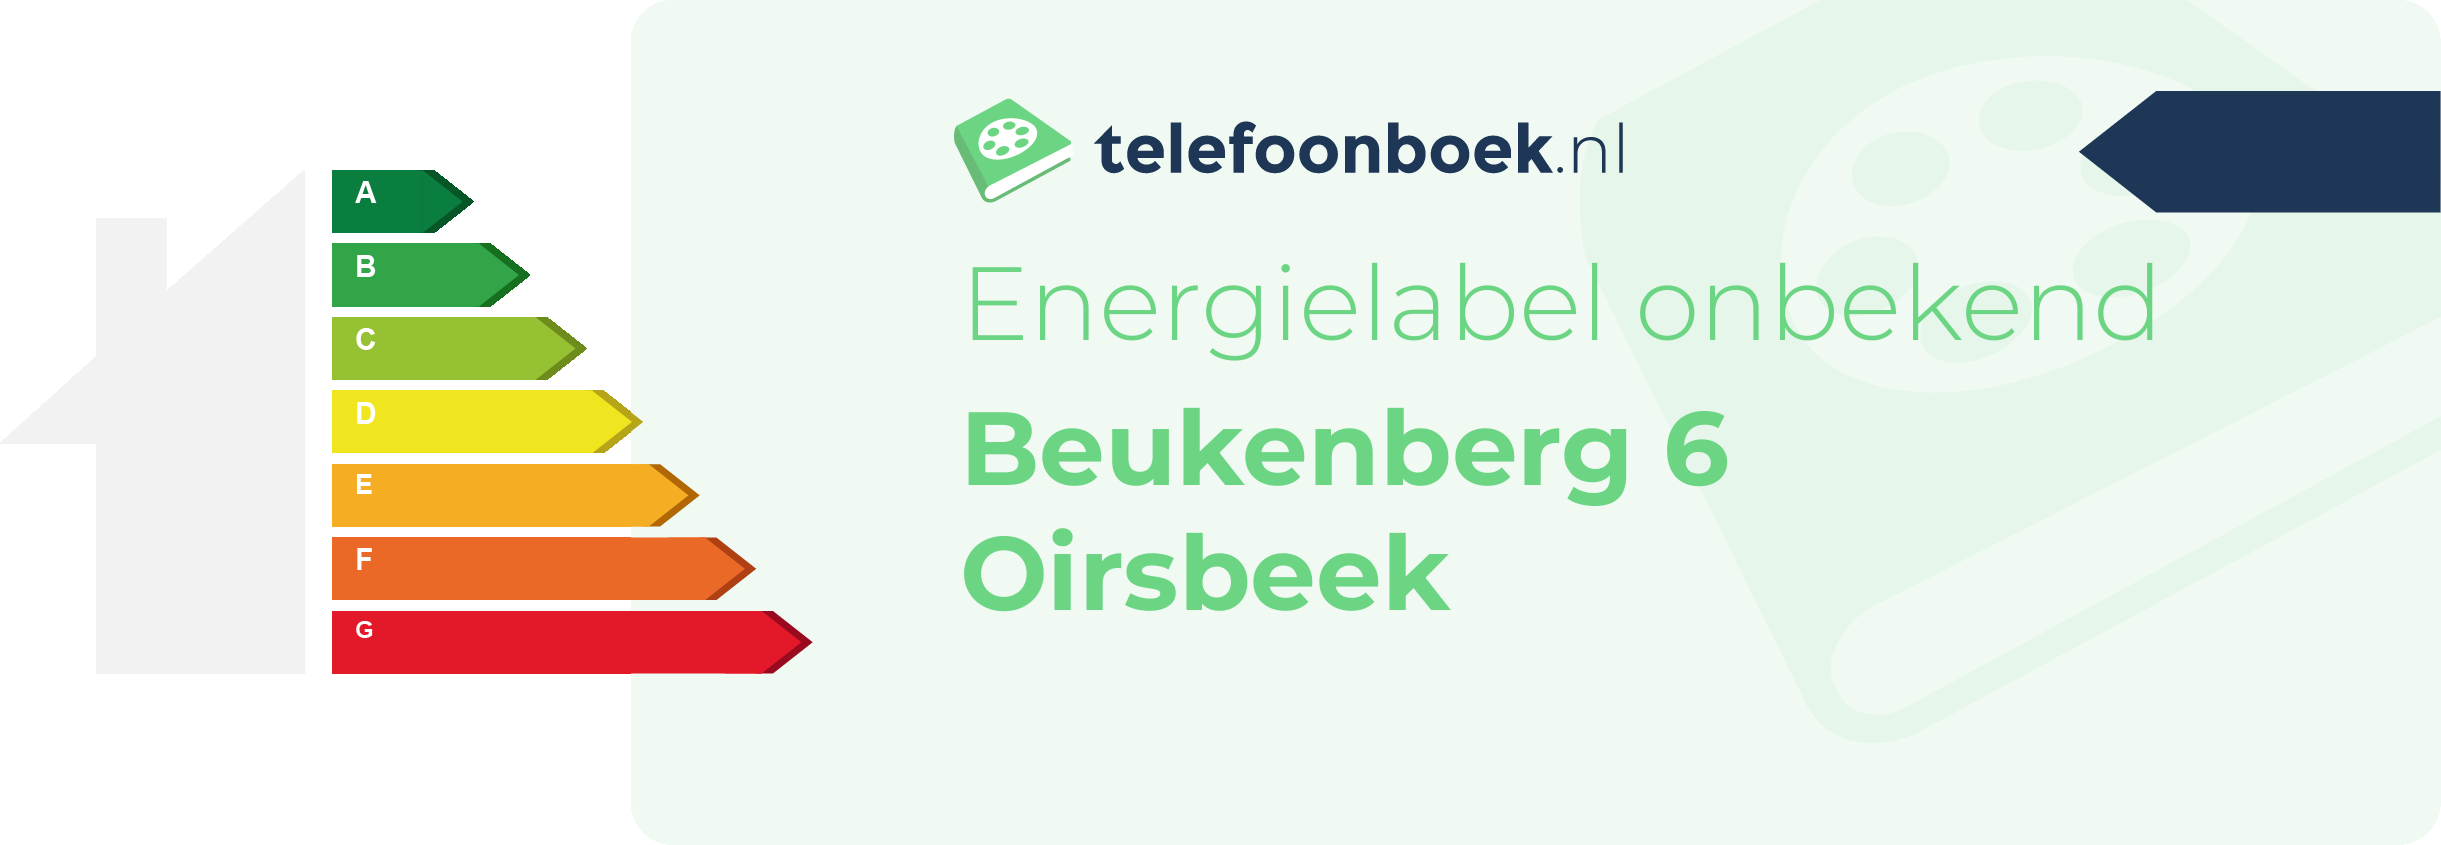 Energielabel Beukenberg 6 Oirsbeek